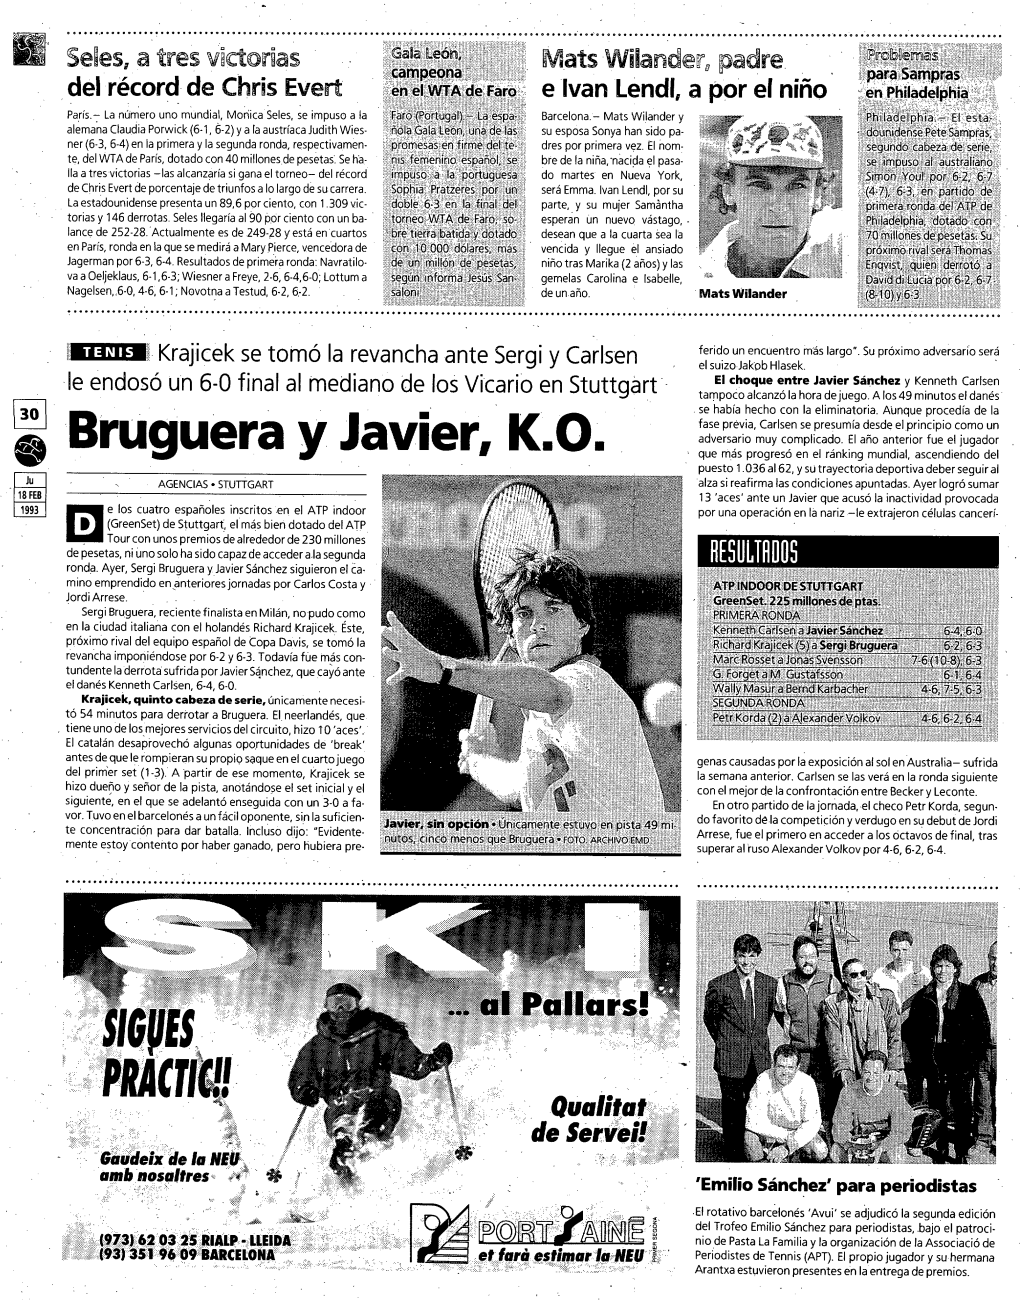 Bruguérá Y Javier K.O.. “•' ' .1 ''...O ___(973J62